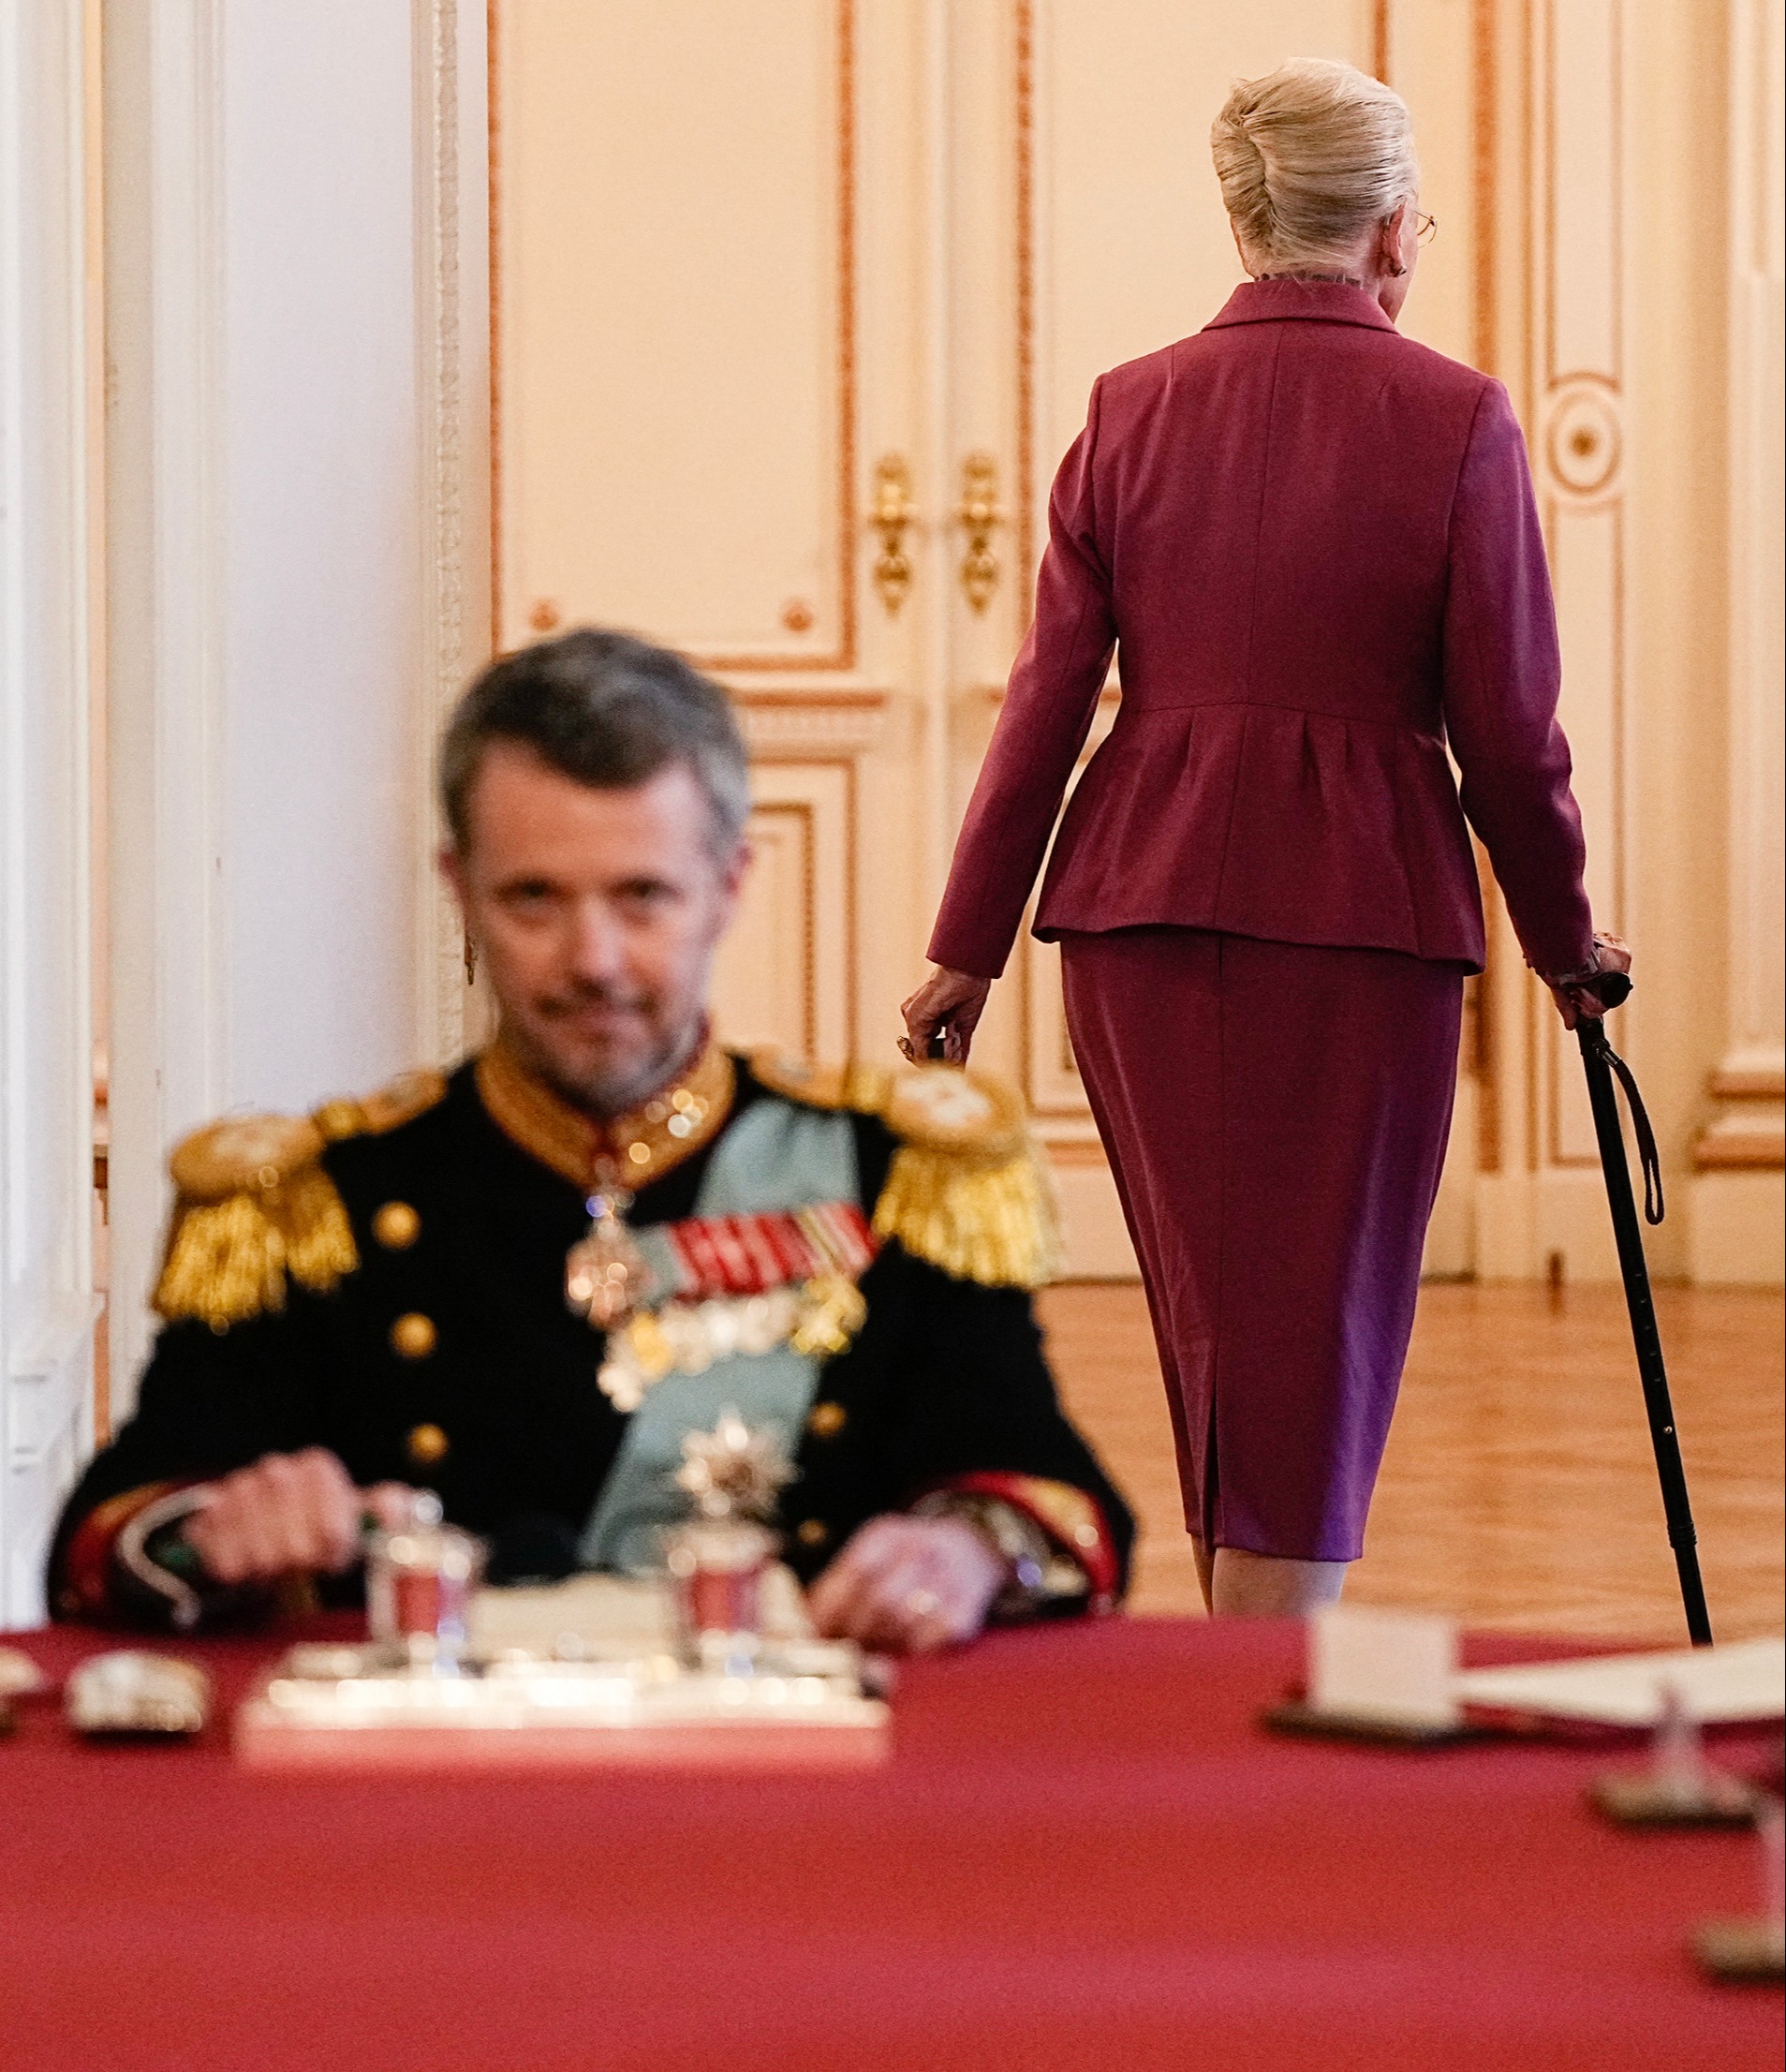 Après avoir signé la déclaration d'abdication, la reine Margrethe II du Danemark a laissé la place en bout de table à son fils le roi Frederik.